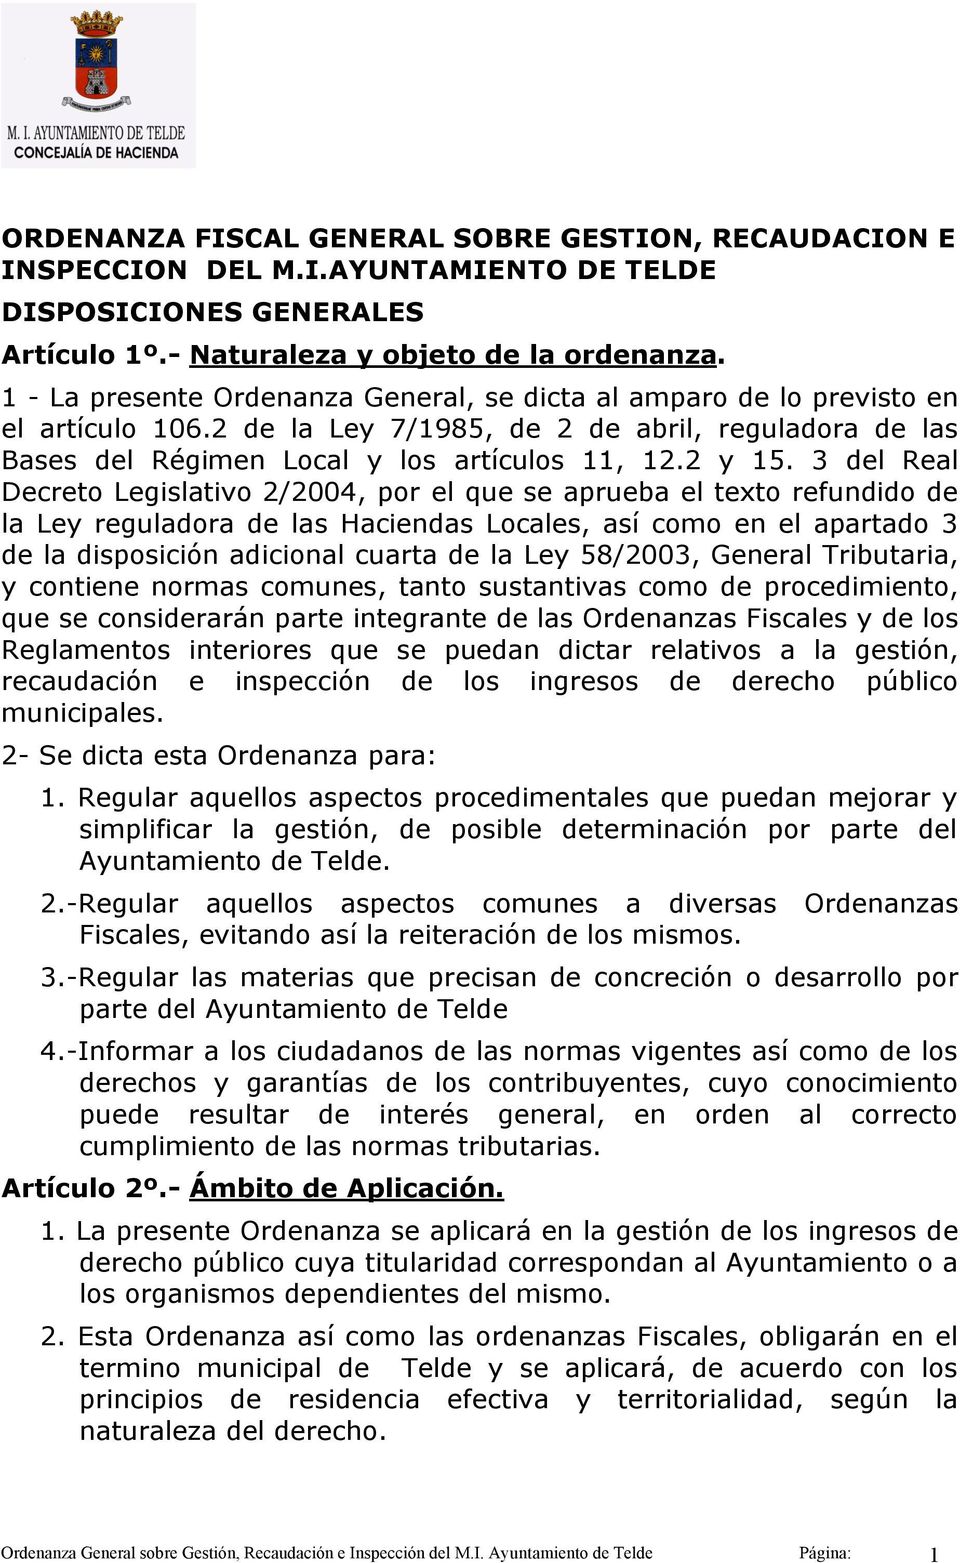 3 del Real Decreto Legislativo 2/2004, por el que se aprueba el texto refundido de la Ley reguladora de las Haciendas Locales, así como en el apartado 3 de la disposición adicional cuarta de la Ley